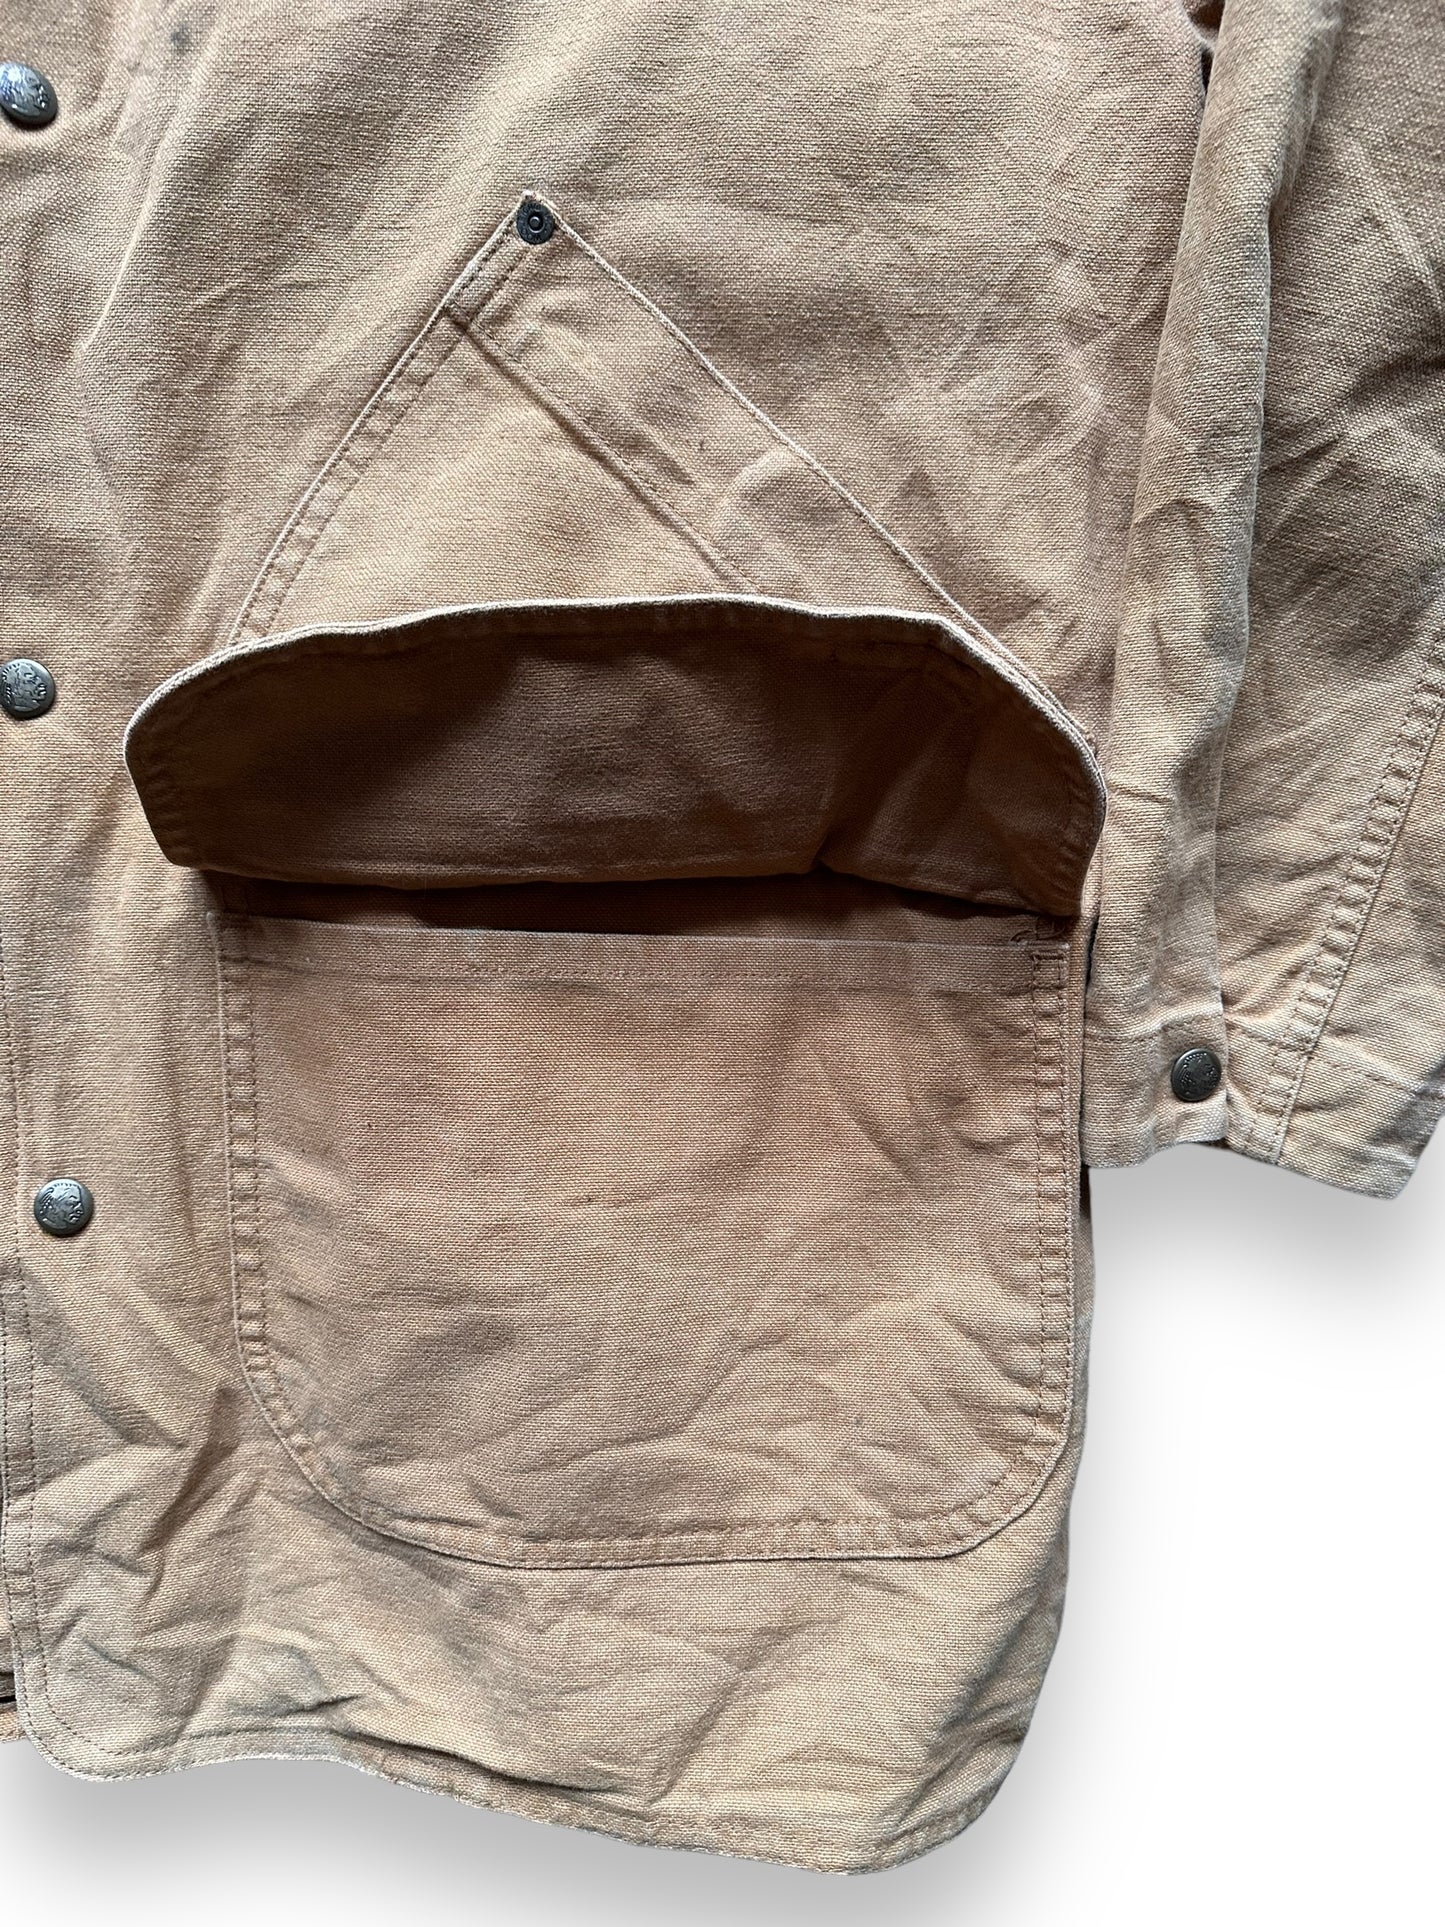 Pocket Details on Vintage Woolrich Blanket Lined Barn Coat SZ L | Vintage Woolrich Jacket Seattle  | Seattle Vintage Clothing